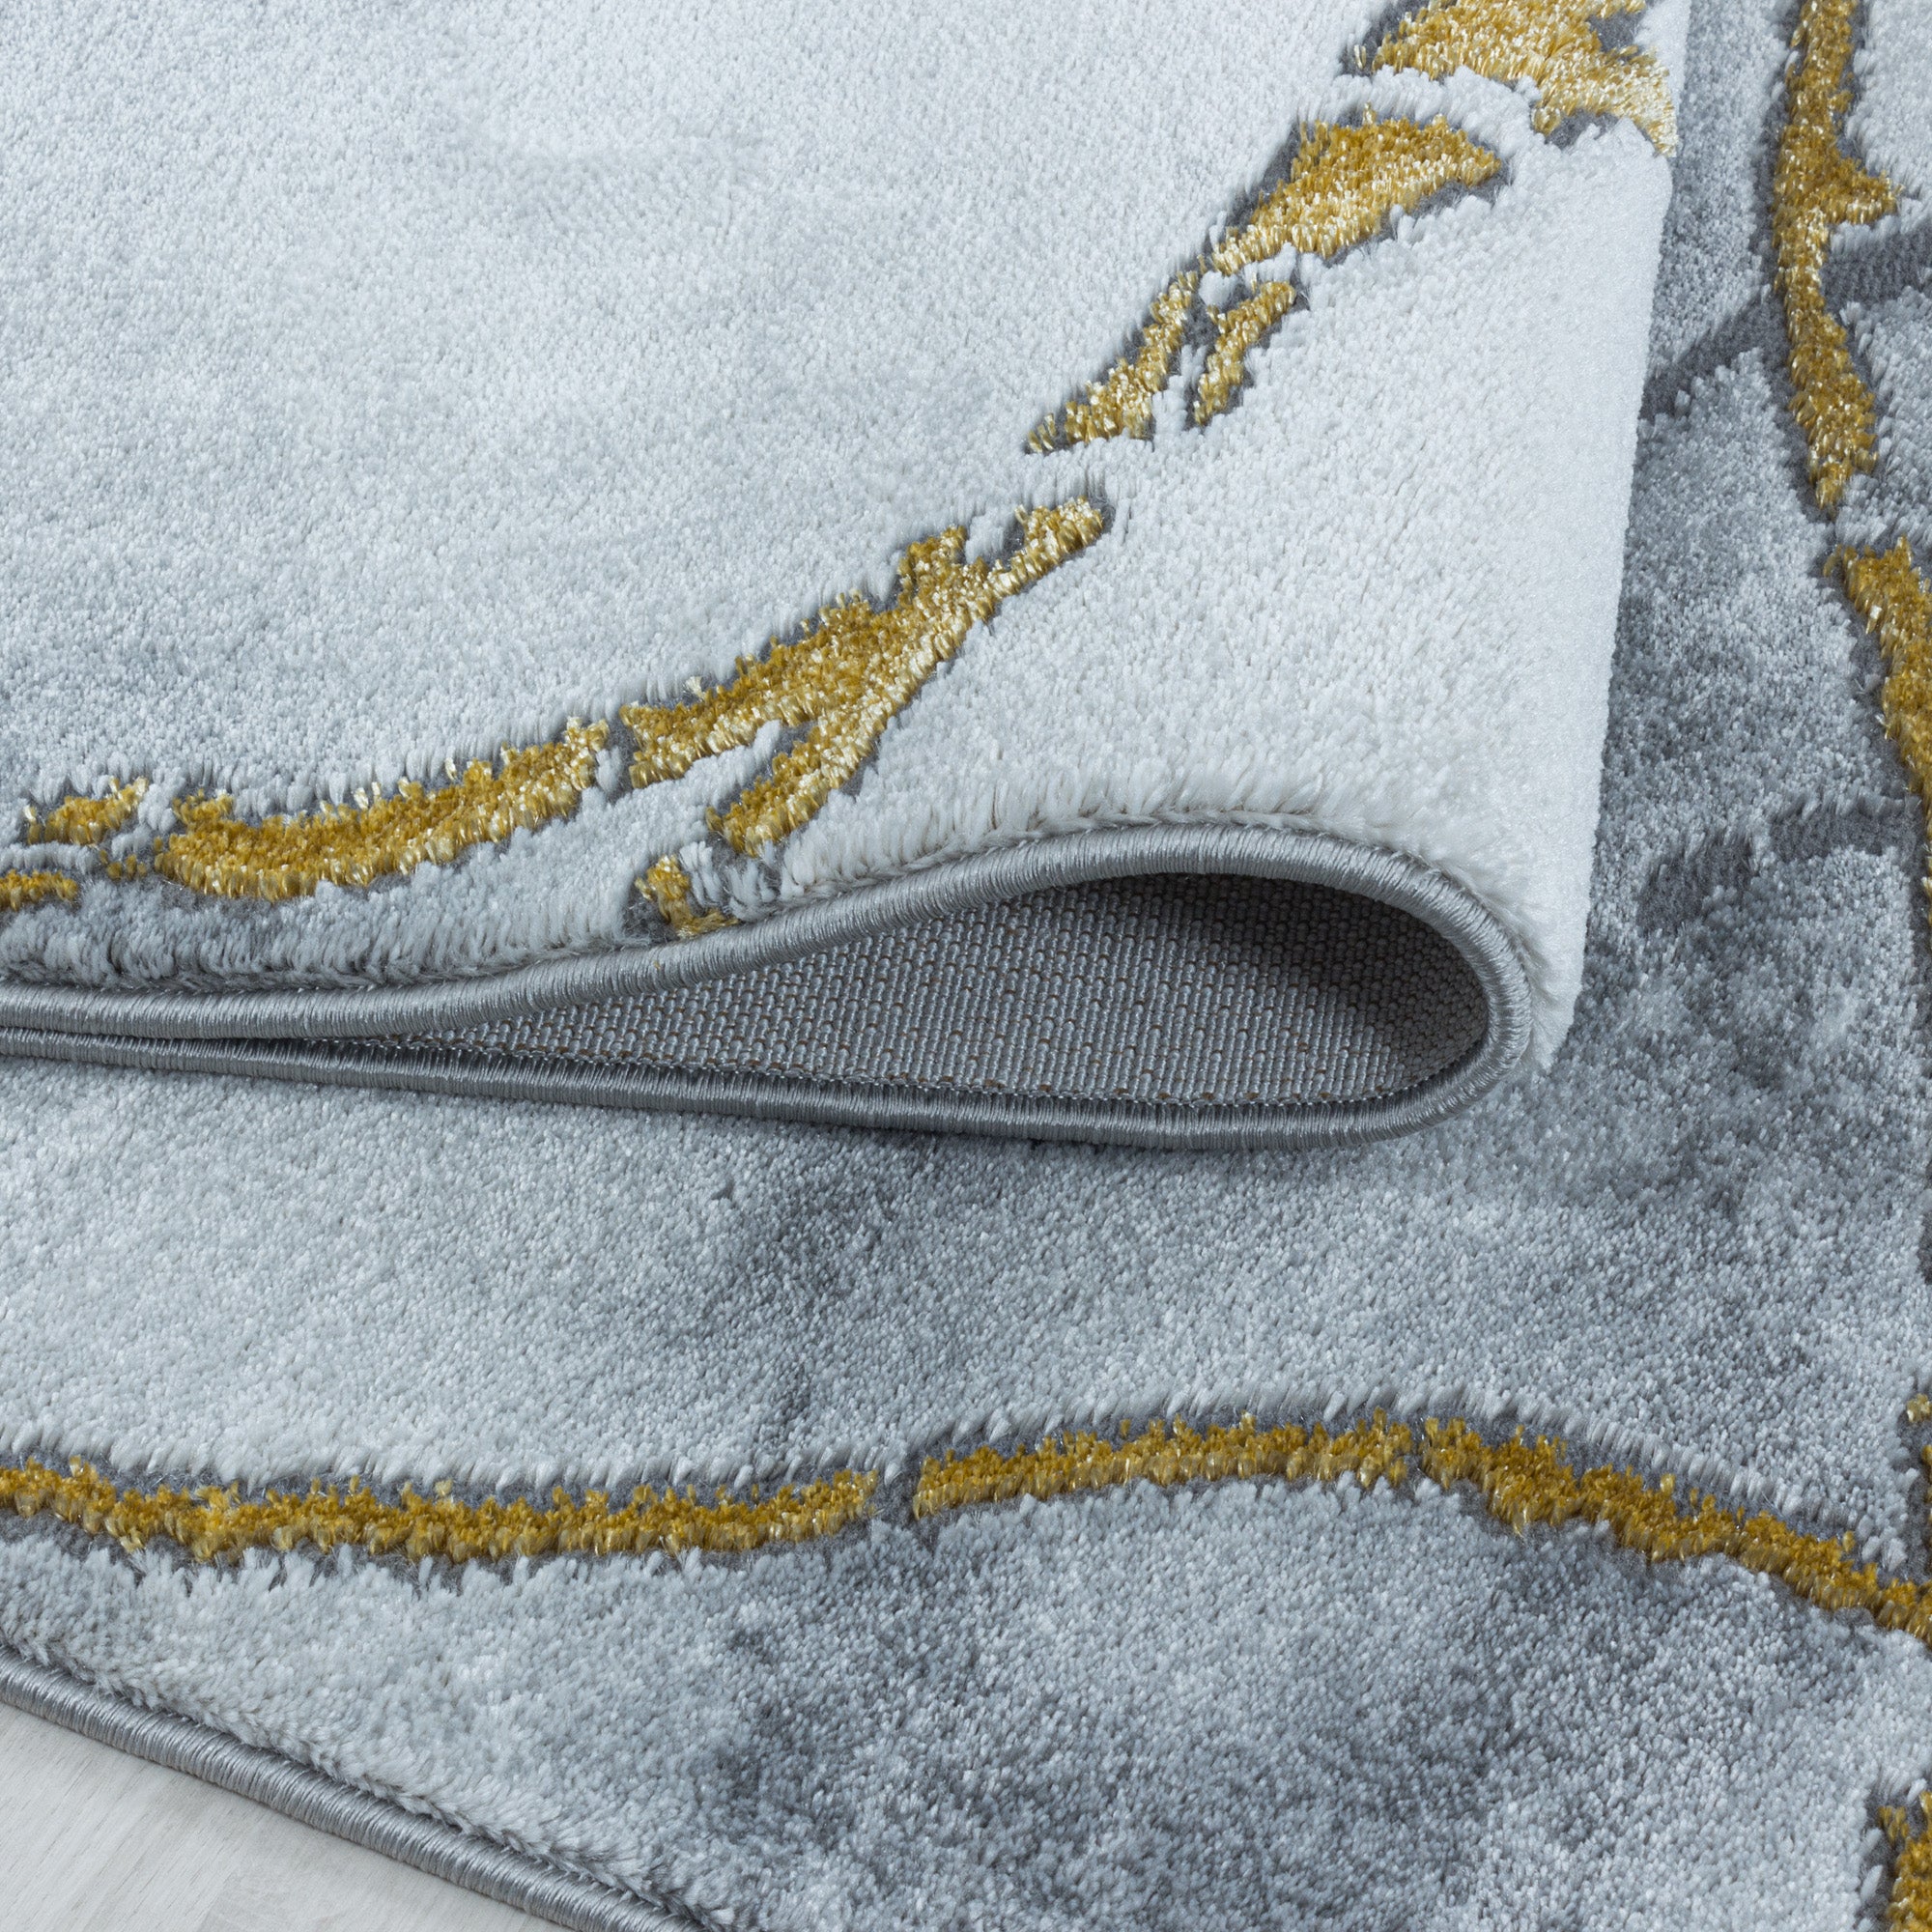 Kurzflor Teppich Set Schlafzimmer Läufer Marmor Muster Marmoriert 3 Teile Gold